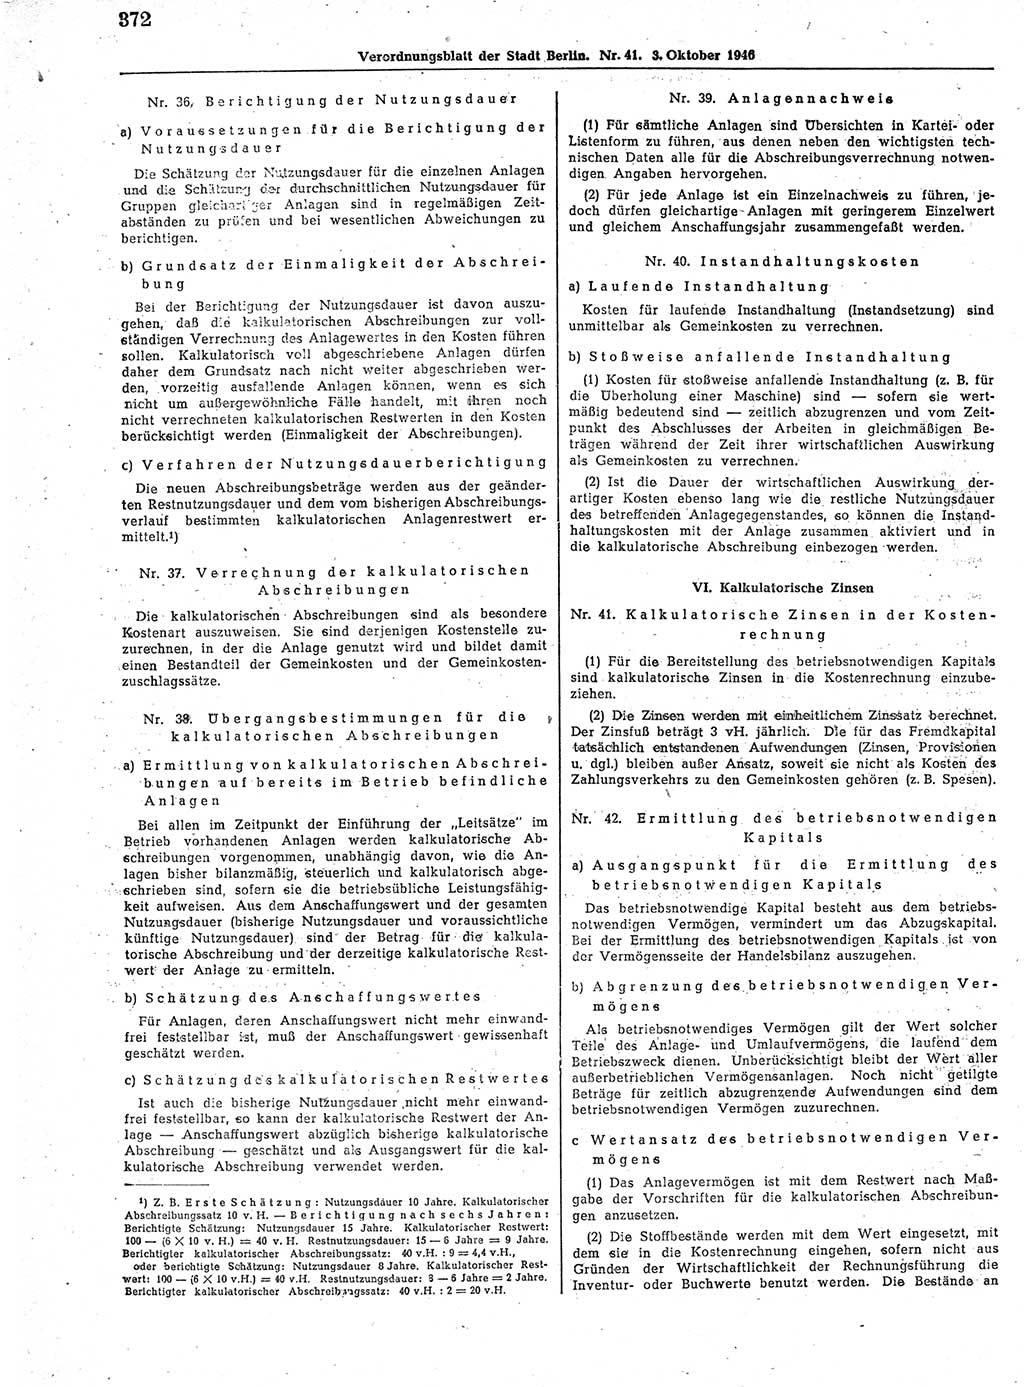 Verordnungsblatt (VOBl.) der Stadt Berlin, für Groß-Berlin 1946, Seite 372 (VOBl. Bln. 1946, S. 372)